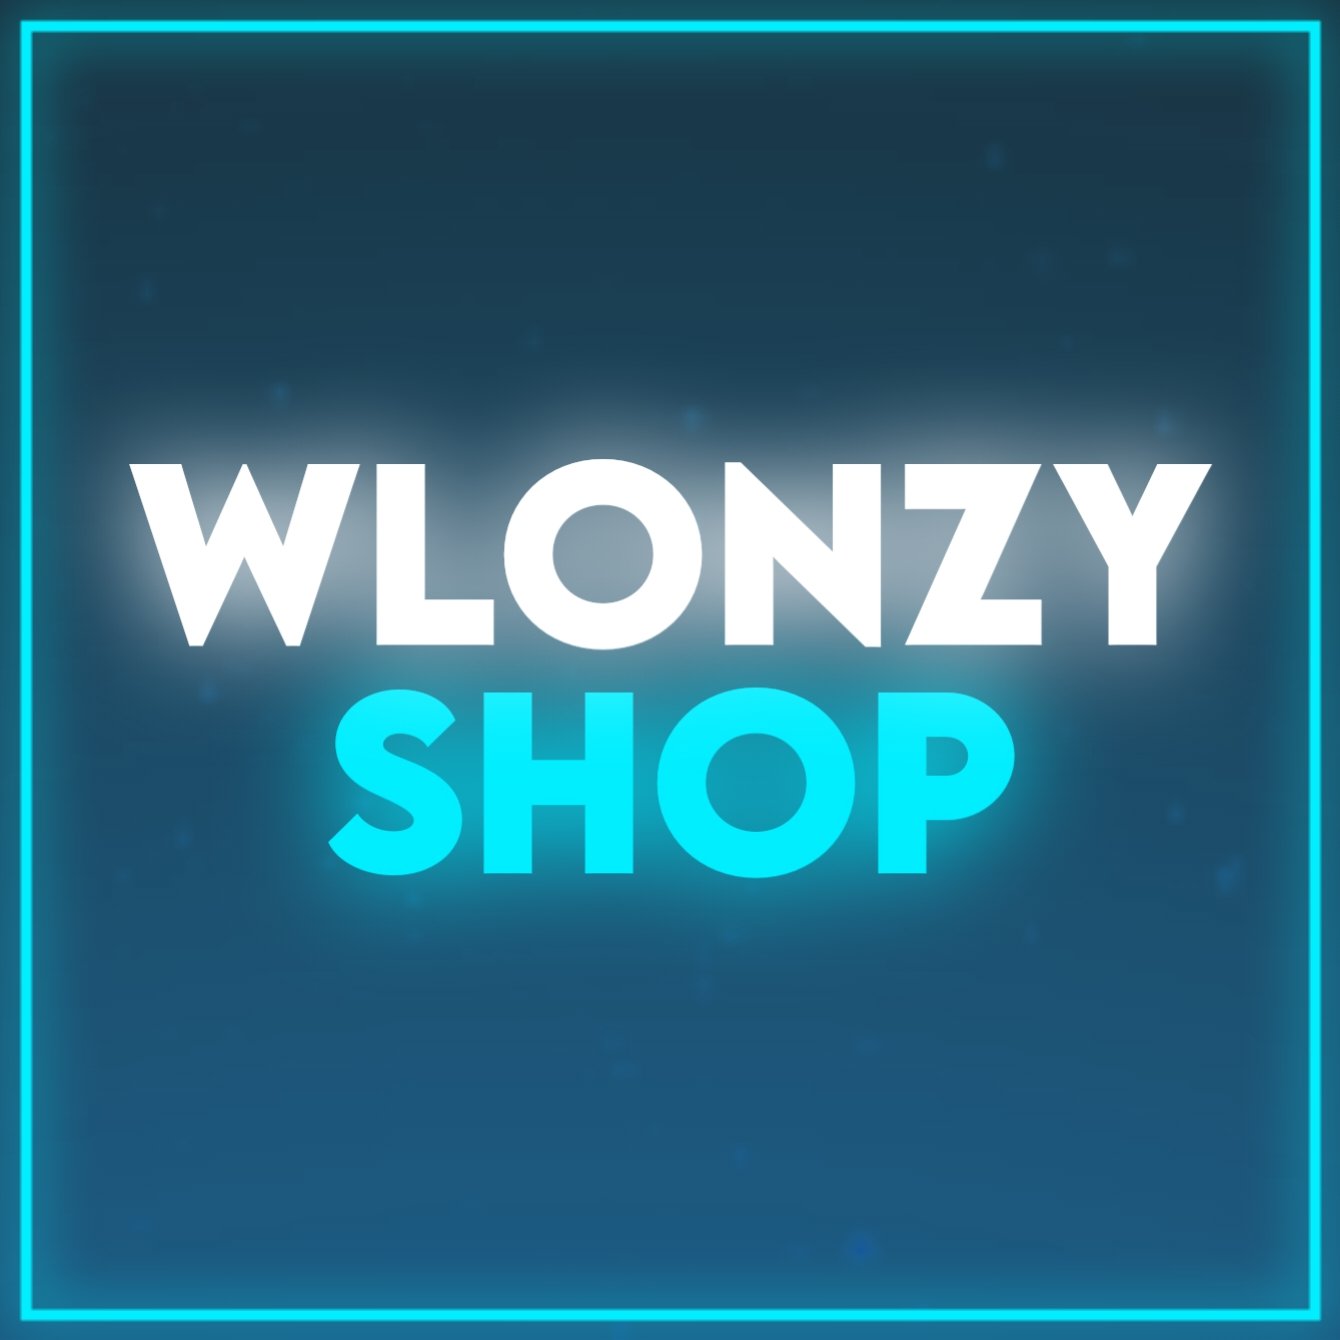 WlonzyShop